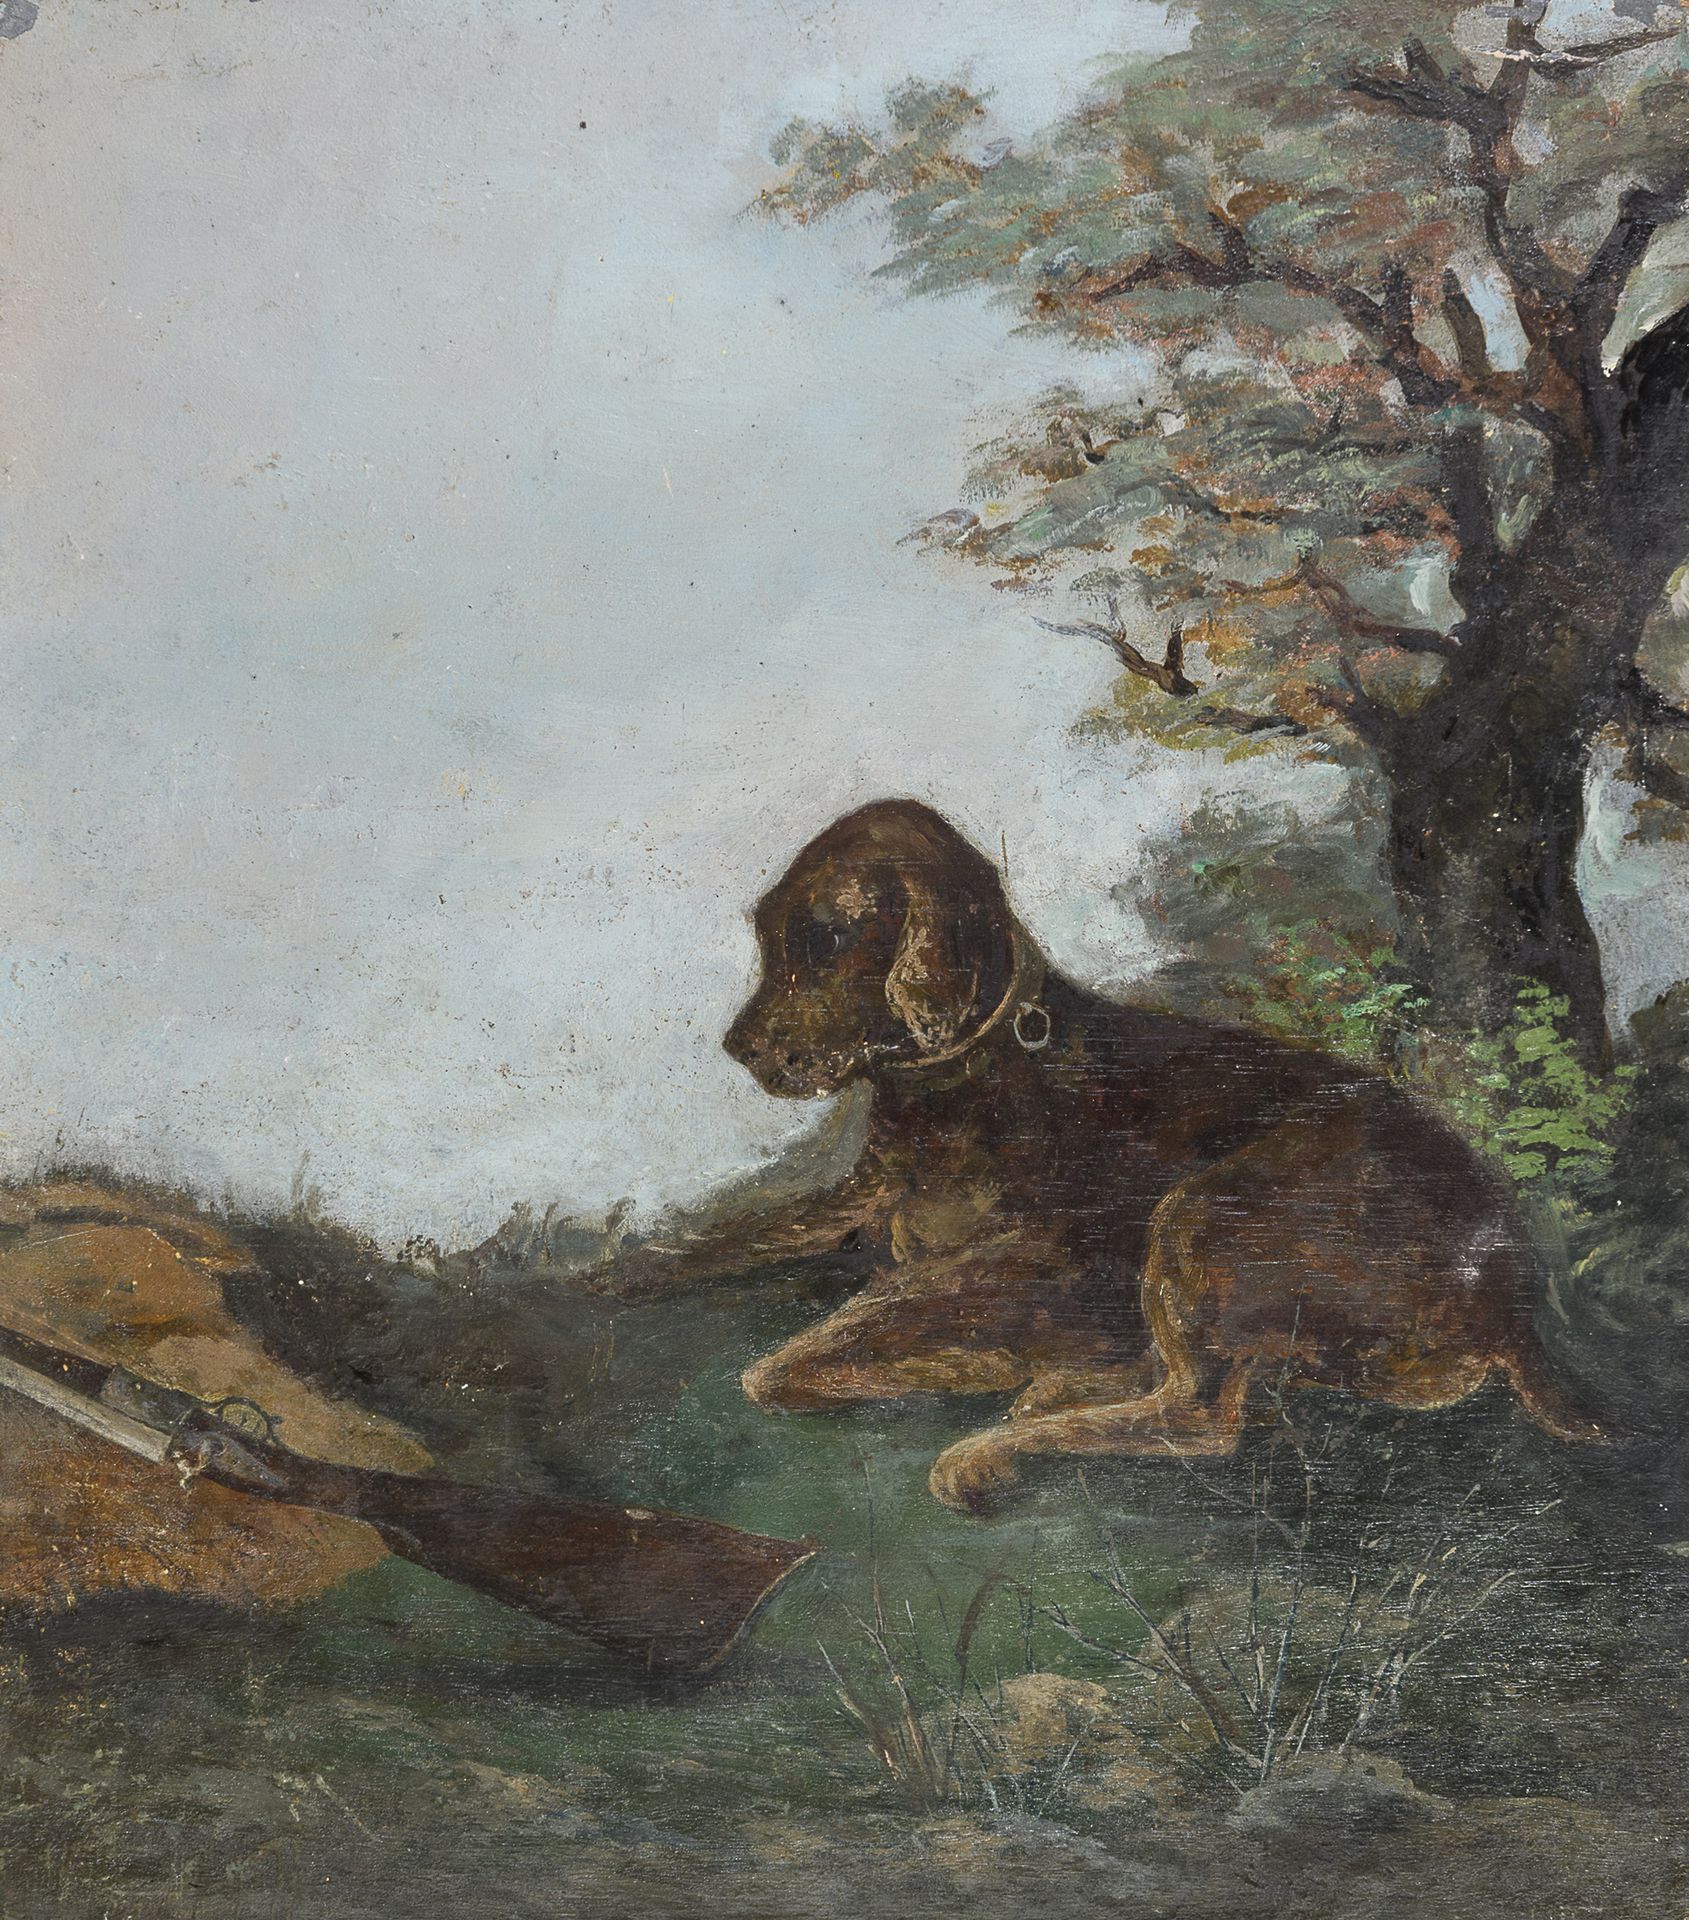 Null 意大利画家，19世纪



犬与枪

板面油画，cm. 25 x 22

背面描绘着花瓶的绘画

无符号